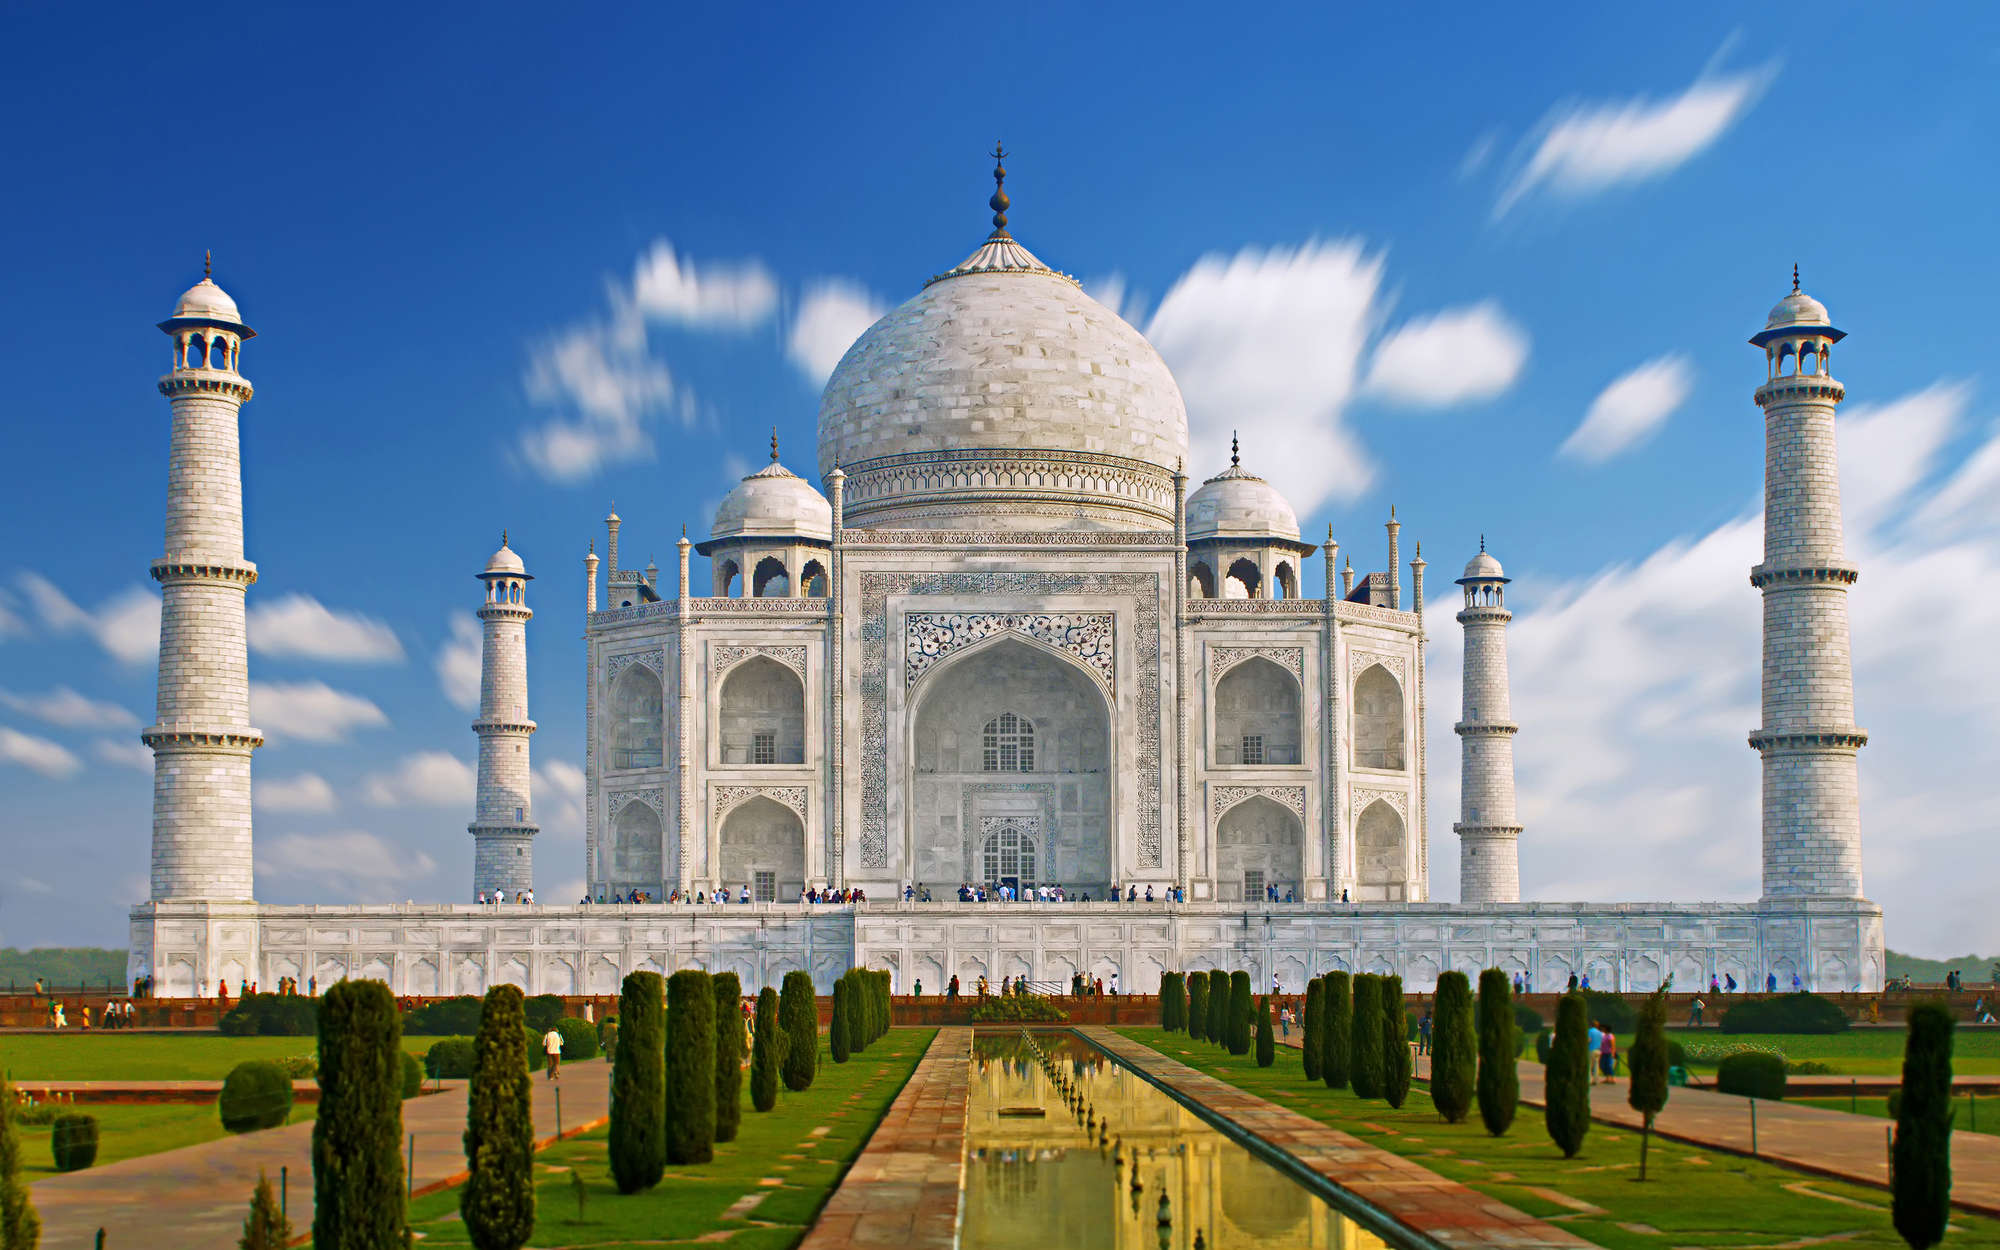             Fototapete Taj Mahal in der Türkei – Perlmutt Glattvlies
        